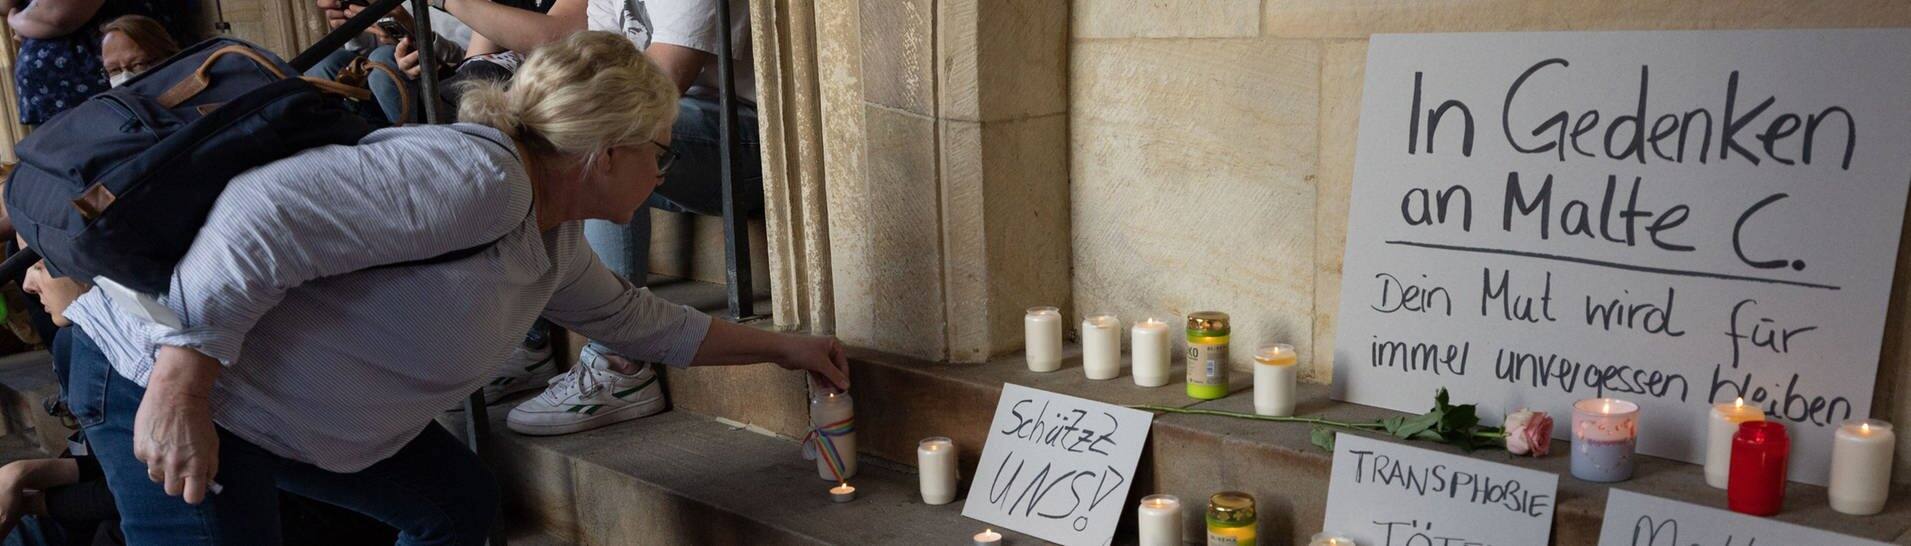 Eine Frau entzündet eine Kerze in Gedenken an Malte C. (Foto: dpa Bildfunk, picture alliance/dpa | Friso Gentsch)